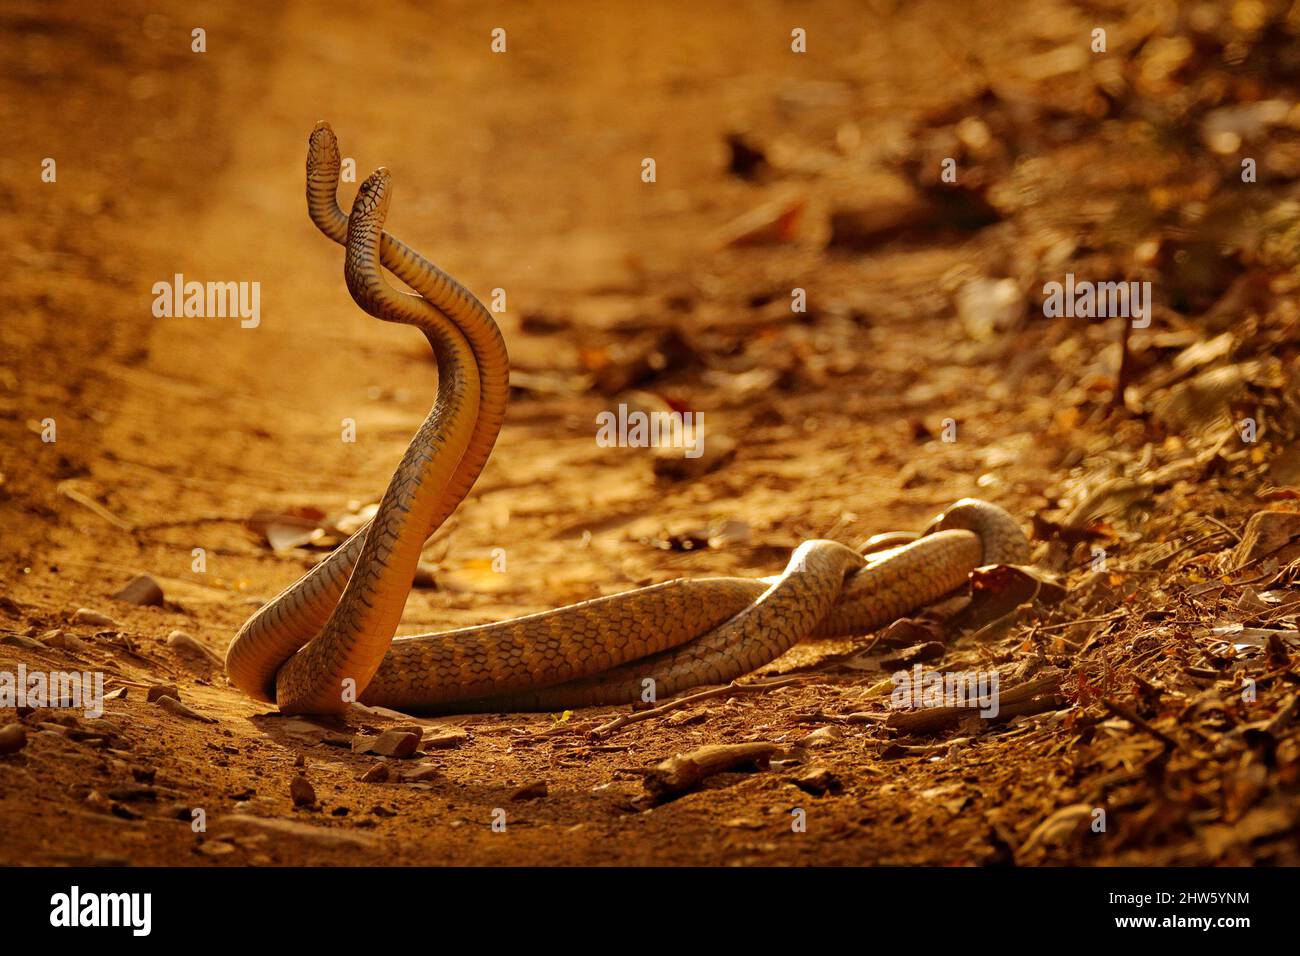 Serpientes indias de rata en lucha, mucosa Ptyas. Dos serpientes indias no venenosas enredaron en la danza del amor en la polvorienta carretera del parque nacional de Ranthambore, India. Foto de stock